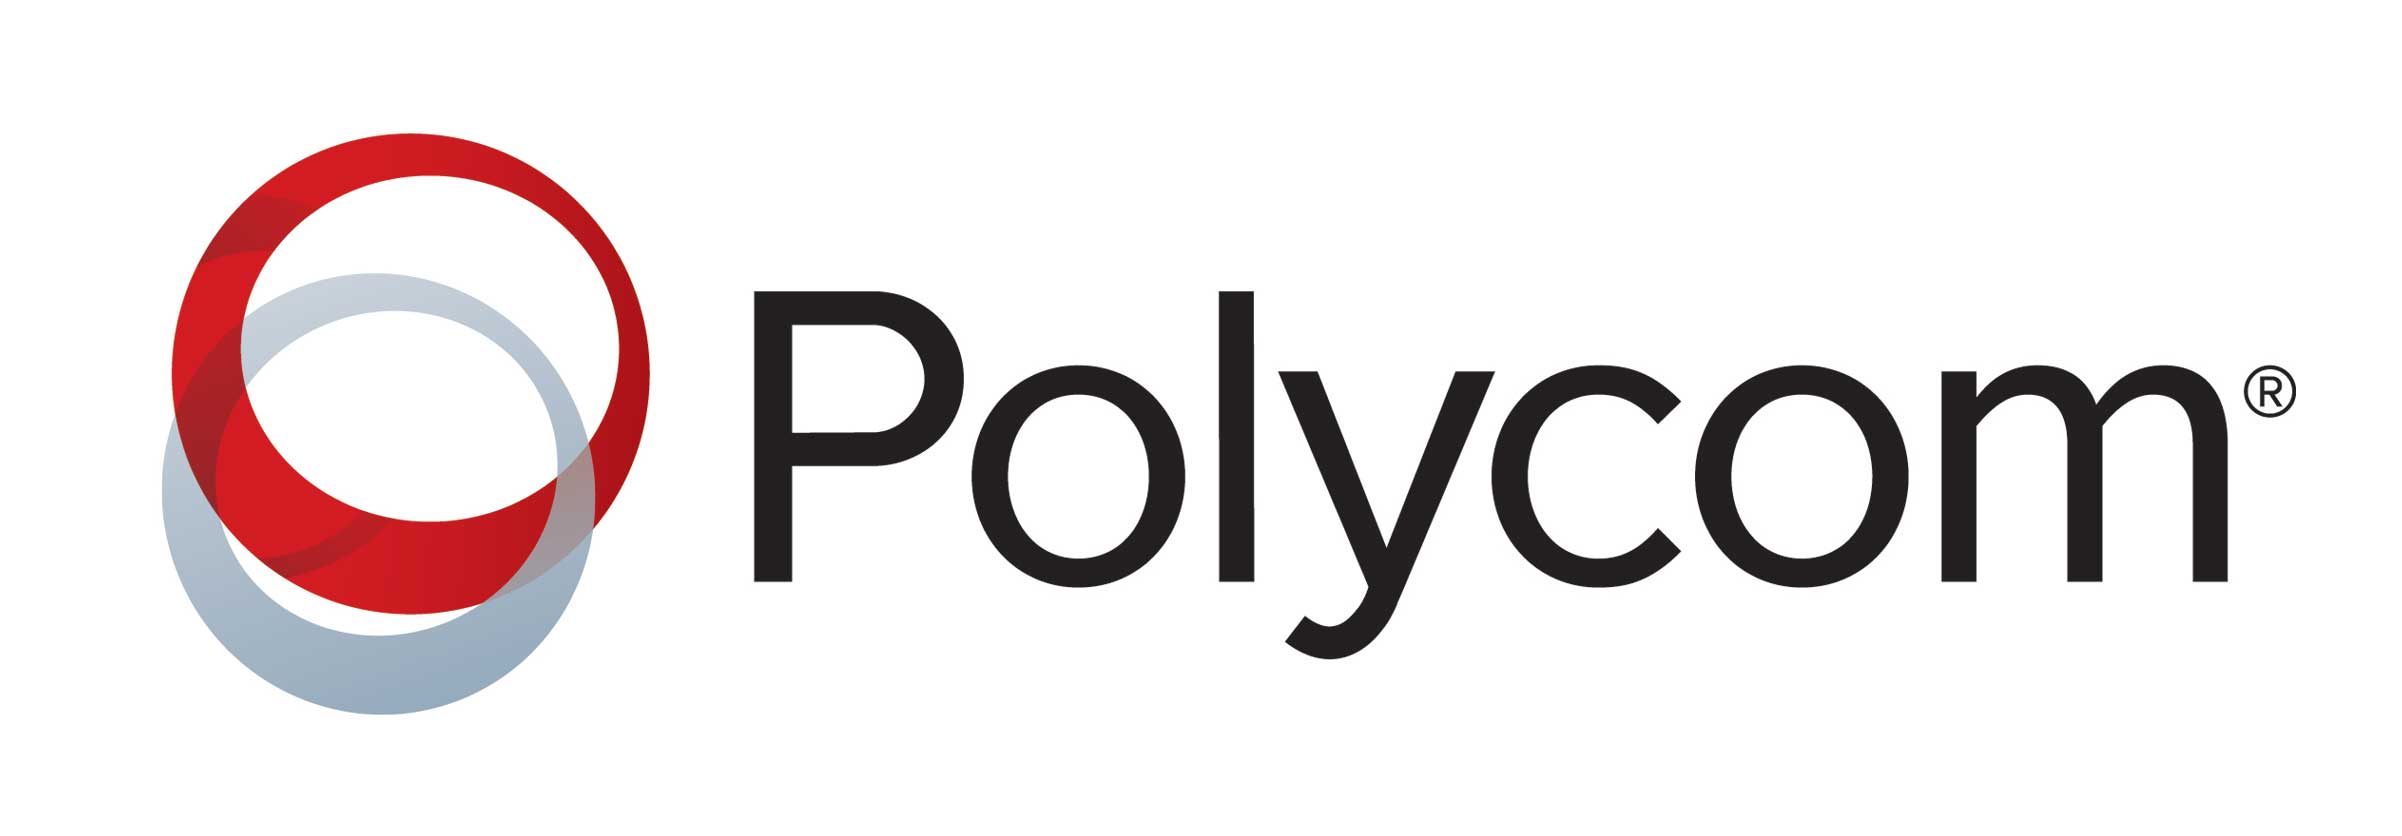 Conference Polycom 